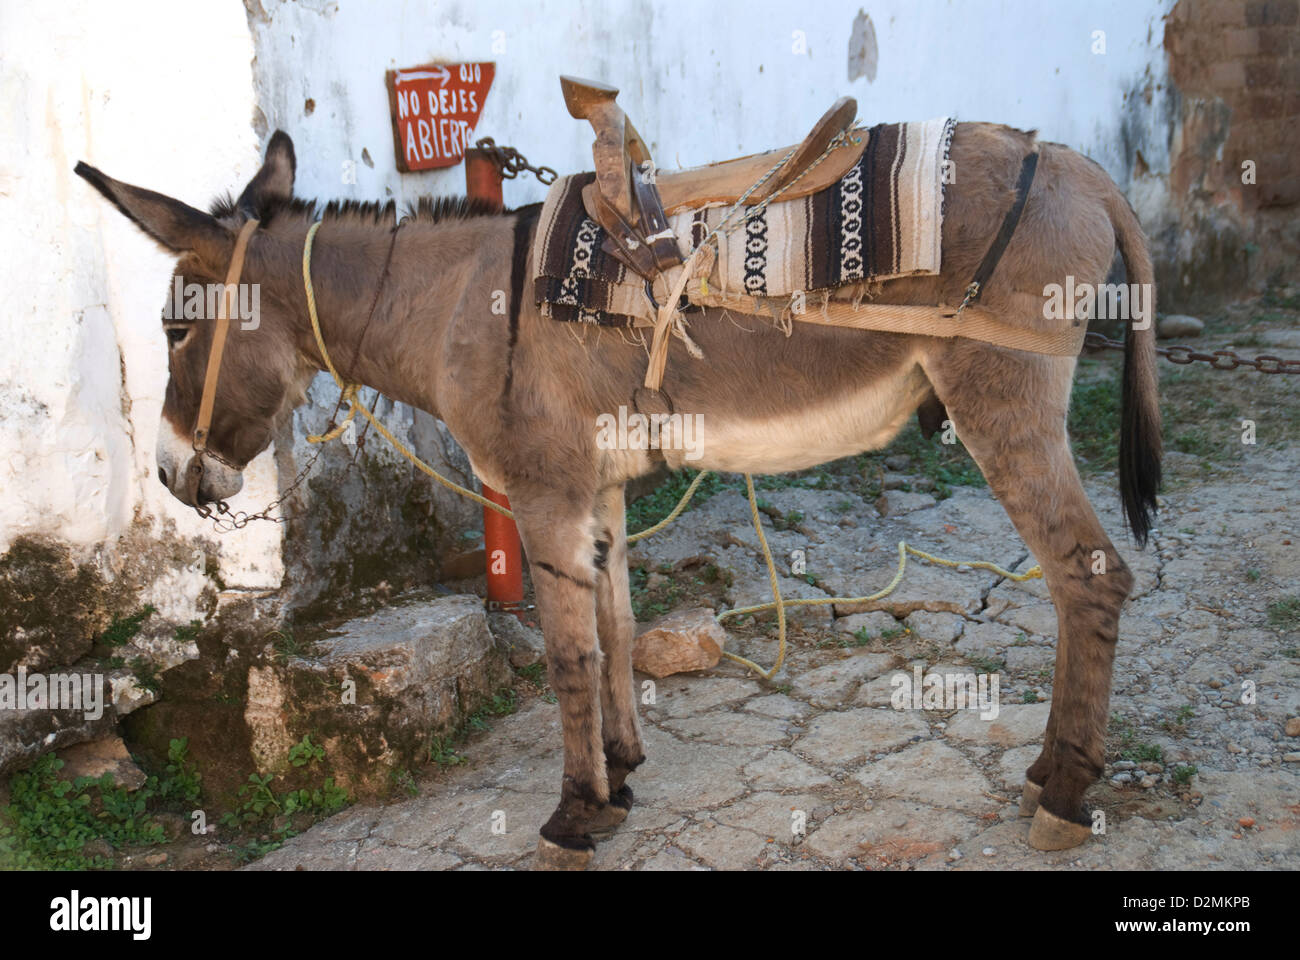 Mexico Mazatlan Sinaloa State burro tourist rides Mexican village. Stock Photo